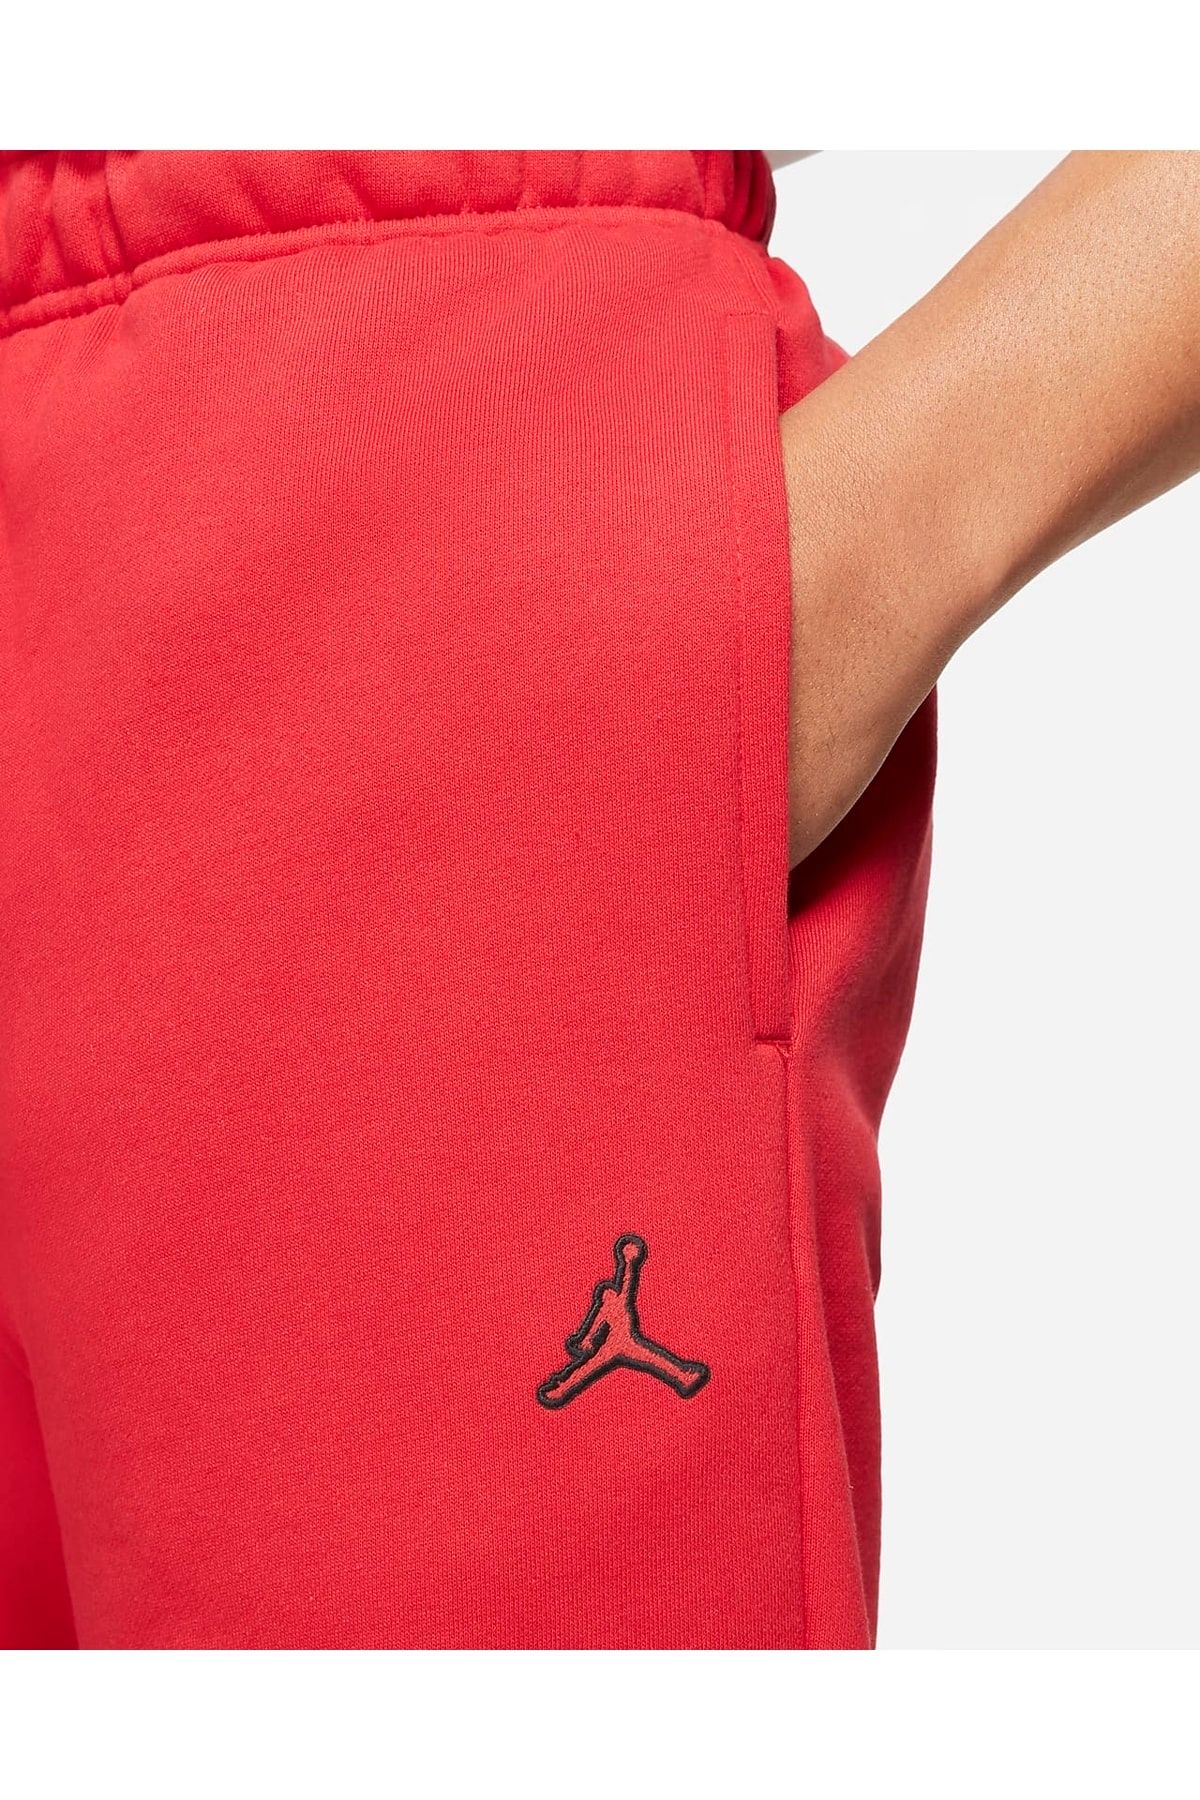 Nike Jordan Brooklyn Fleece Erkek Eşofman Altı